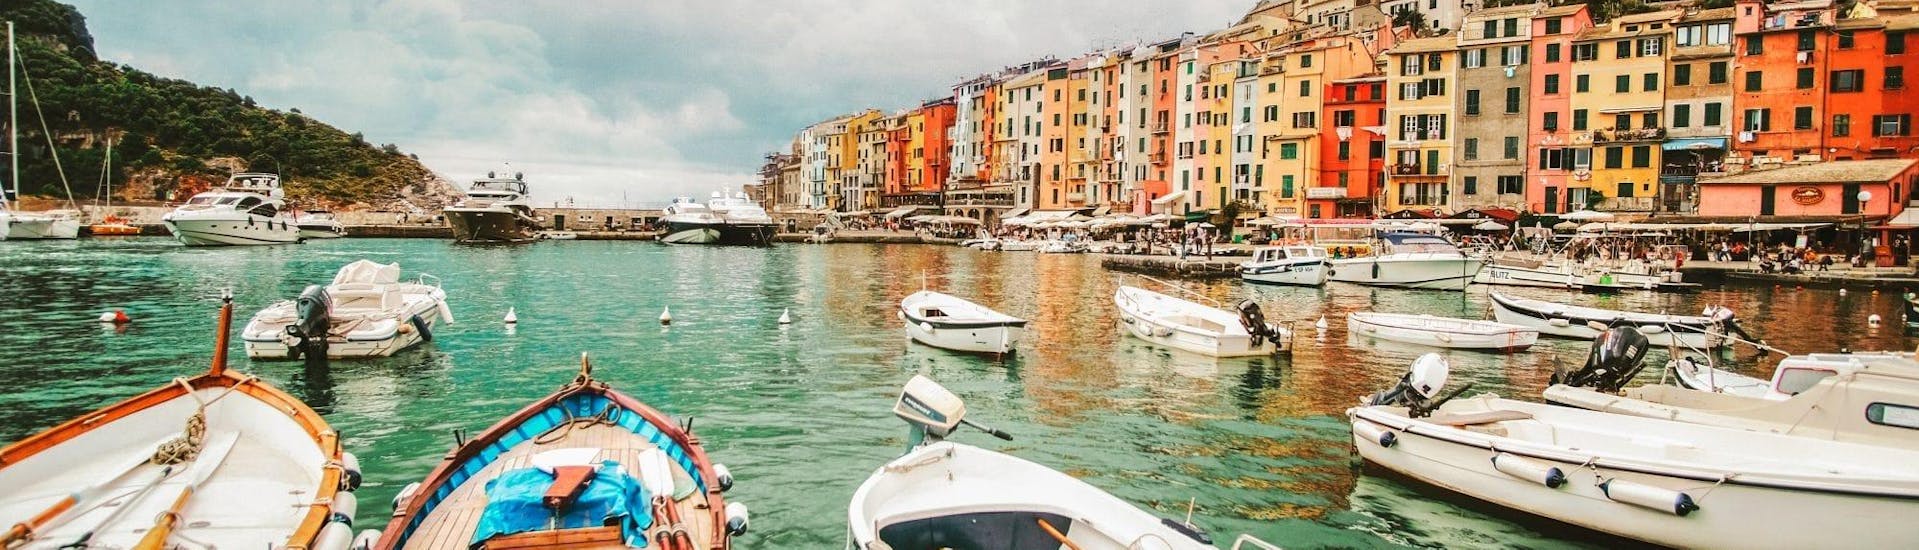 Die schöne Landschaft von Porto Venere, die man während der Bootstour nach Porto Venere und Vernazza von La Spezia mit Cinque Terre Ferries bewundern kann.